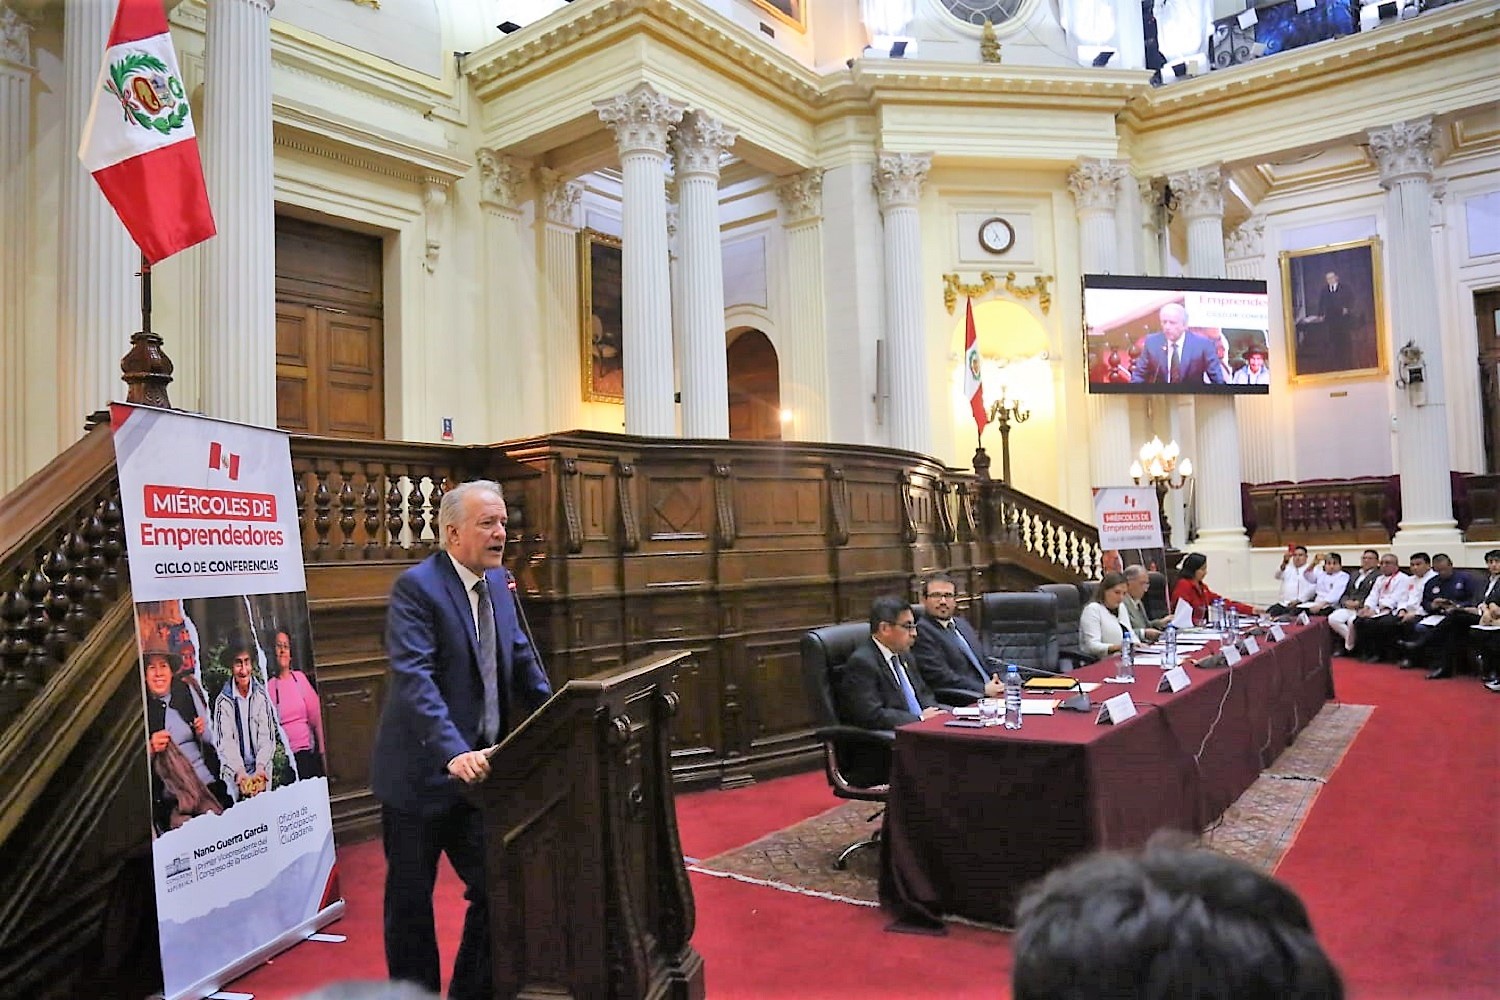 Primer vicepresidente del Congreso, Hernando Guerra García Campos, inauguró el lanzamiento de los Miércoles de Emprendedores.